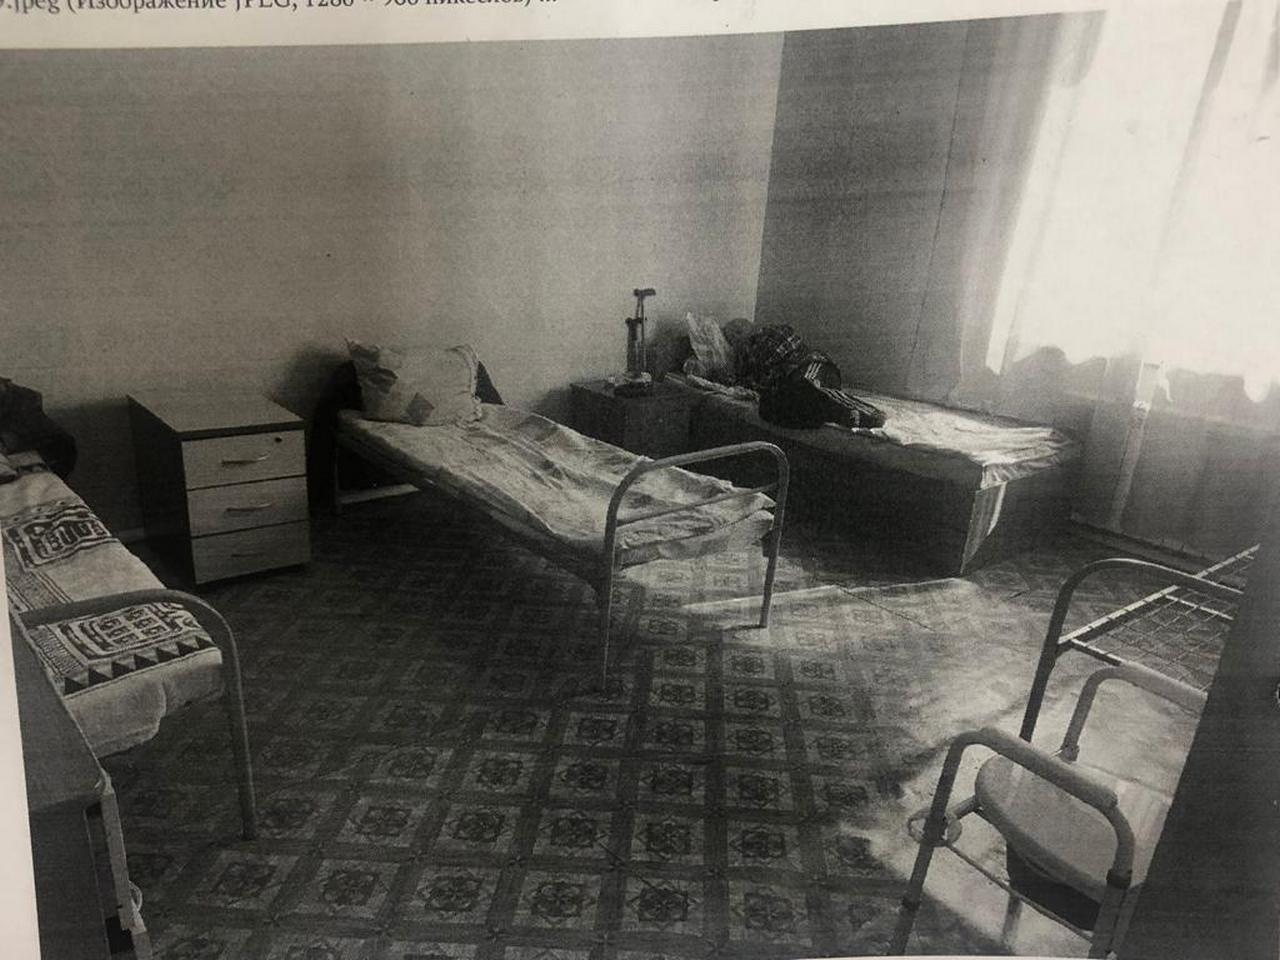 Частный пансионат, где скончалась женщина. Фото из материалов уголовного дела